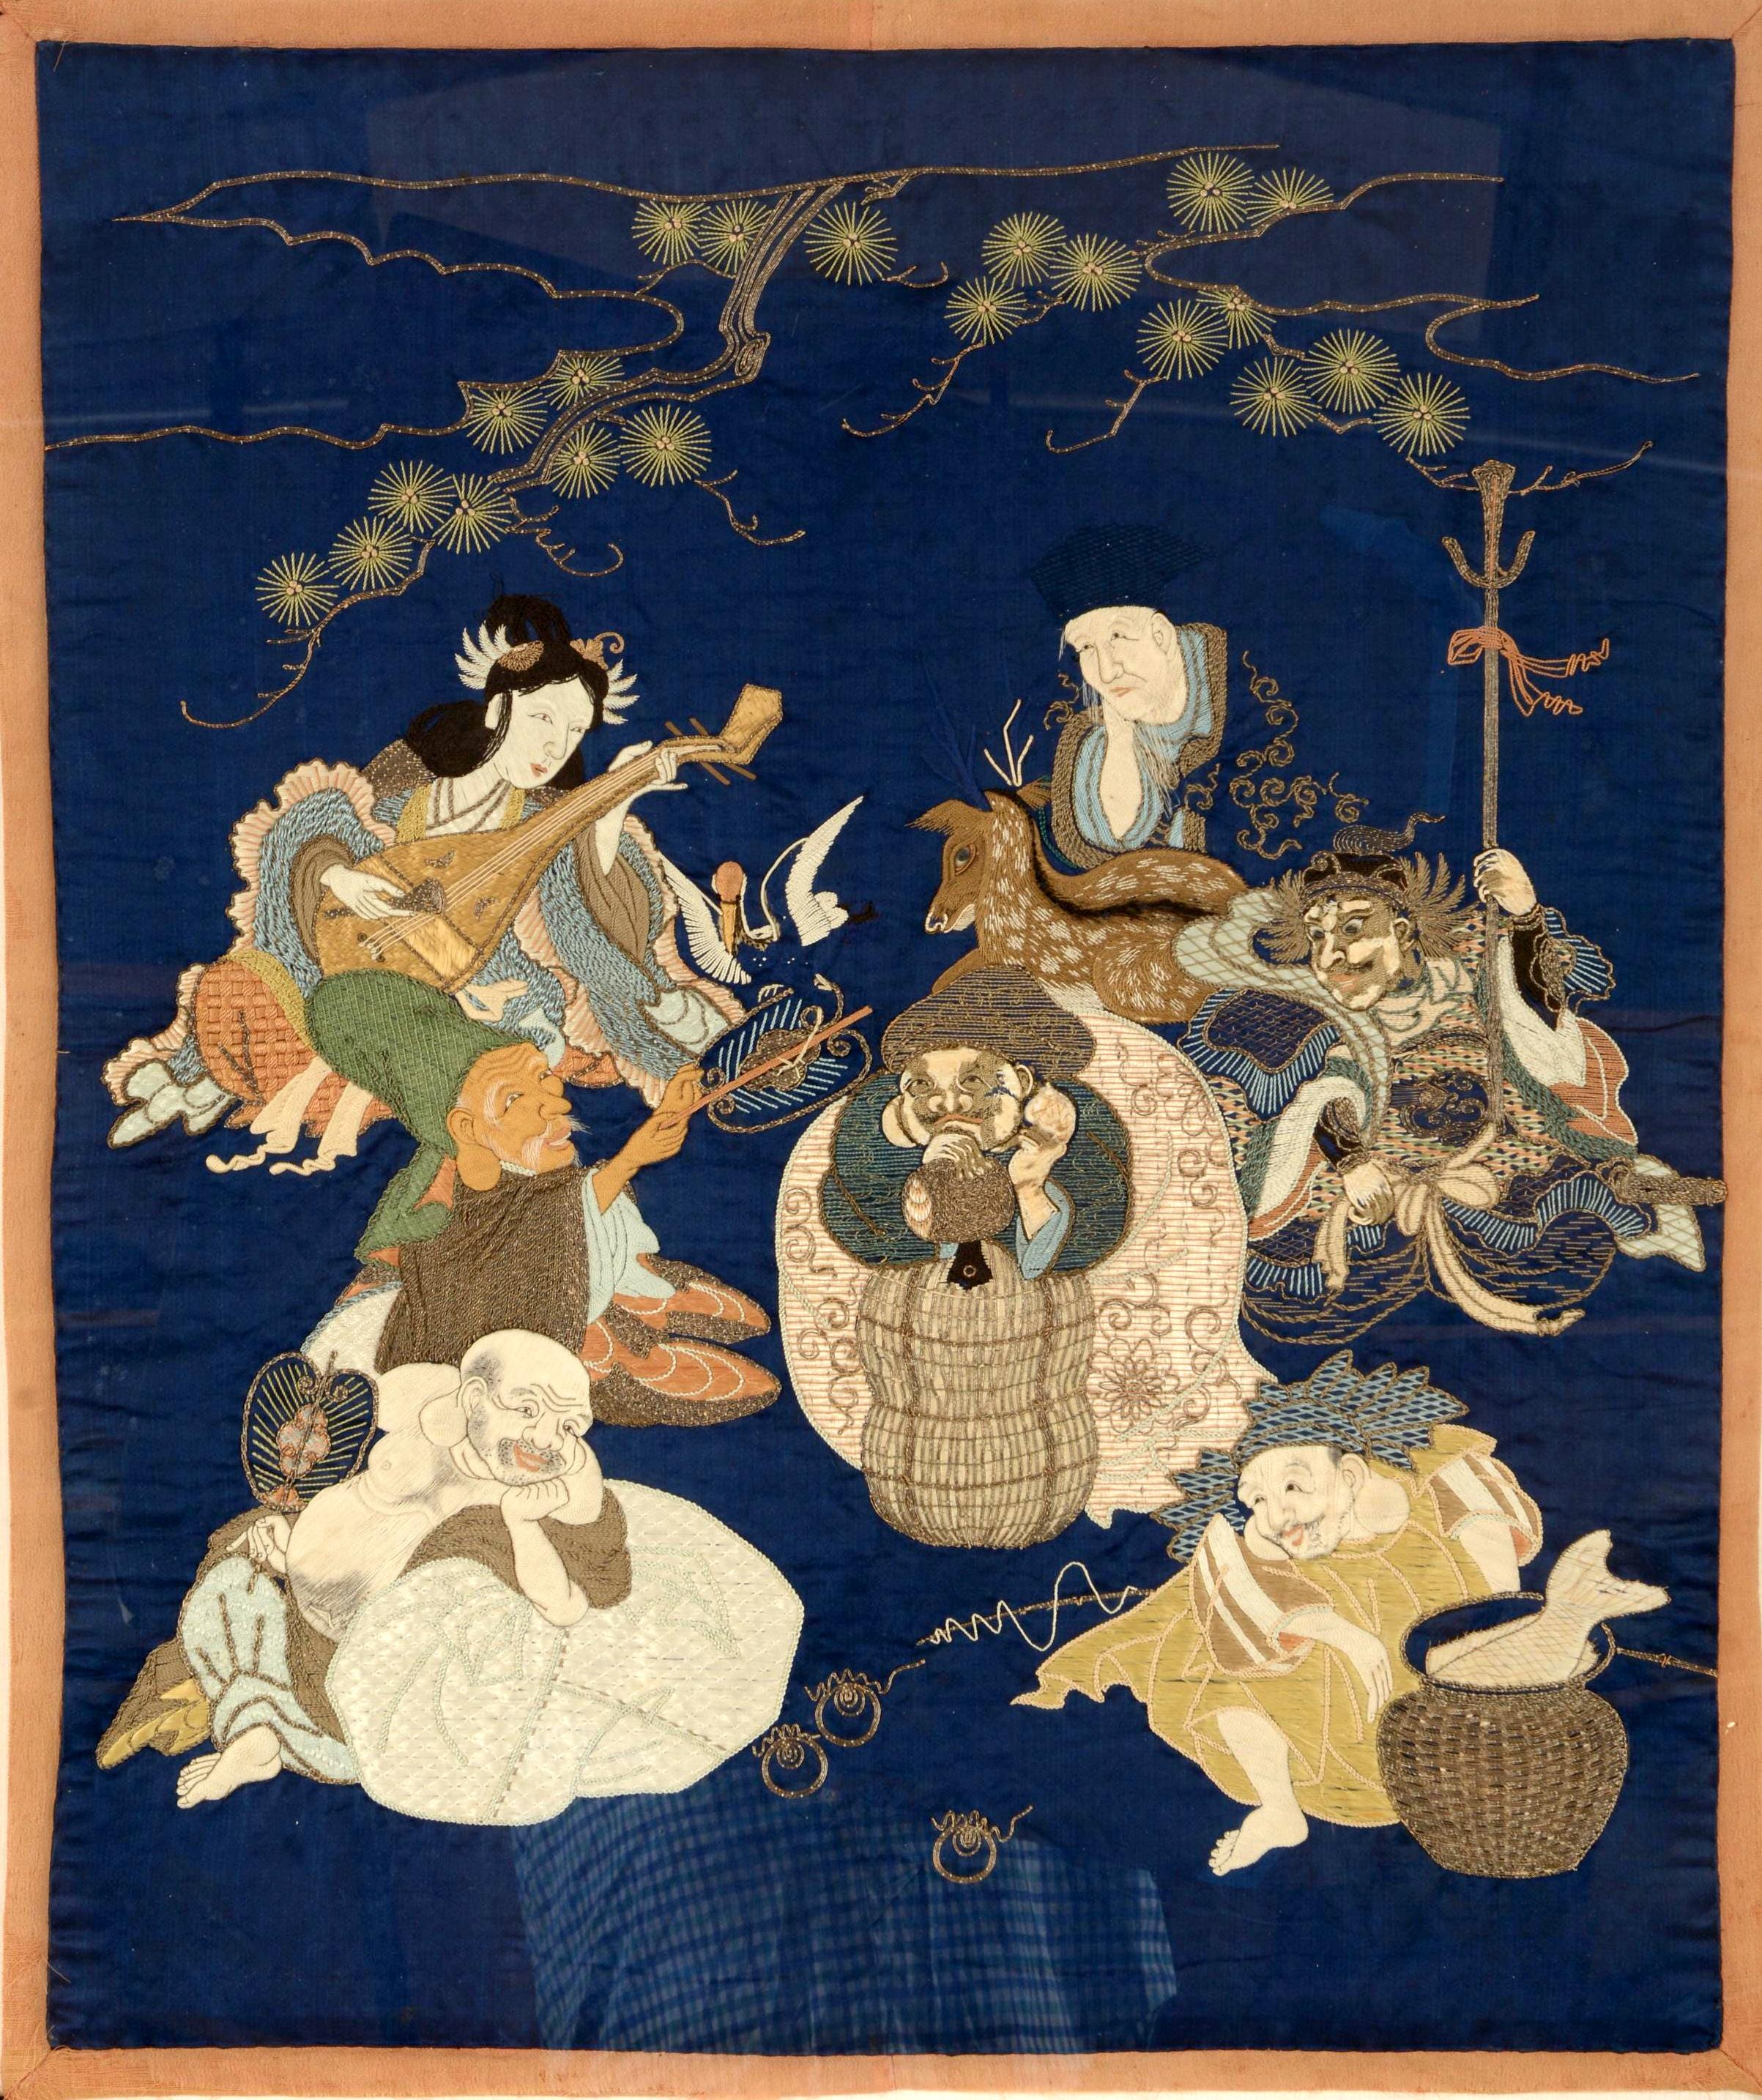 Ein japanisches Fukusa-Paneel mit Quasten in einem vergoldeten Rahmen aus der Meiji-Periode. Fukusa ist eine traditionelle japanische Textilkunst, mit der Geschenke bei wichtigen Anlässen verpackt werden. Auf dem tiefblauen Hintergrund zeigt die